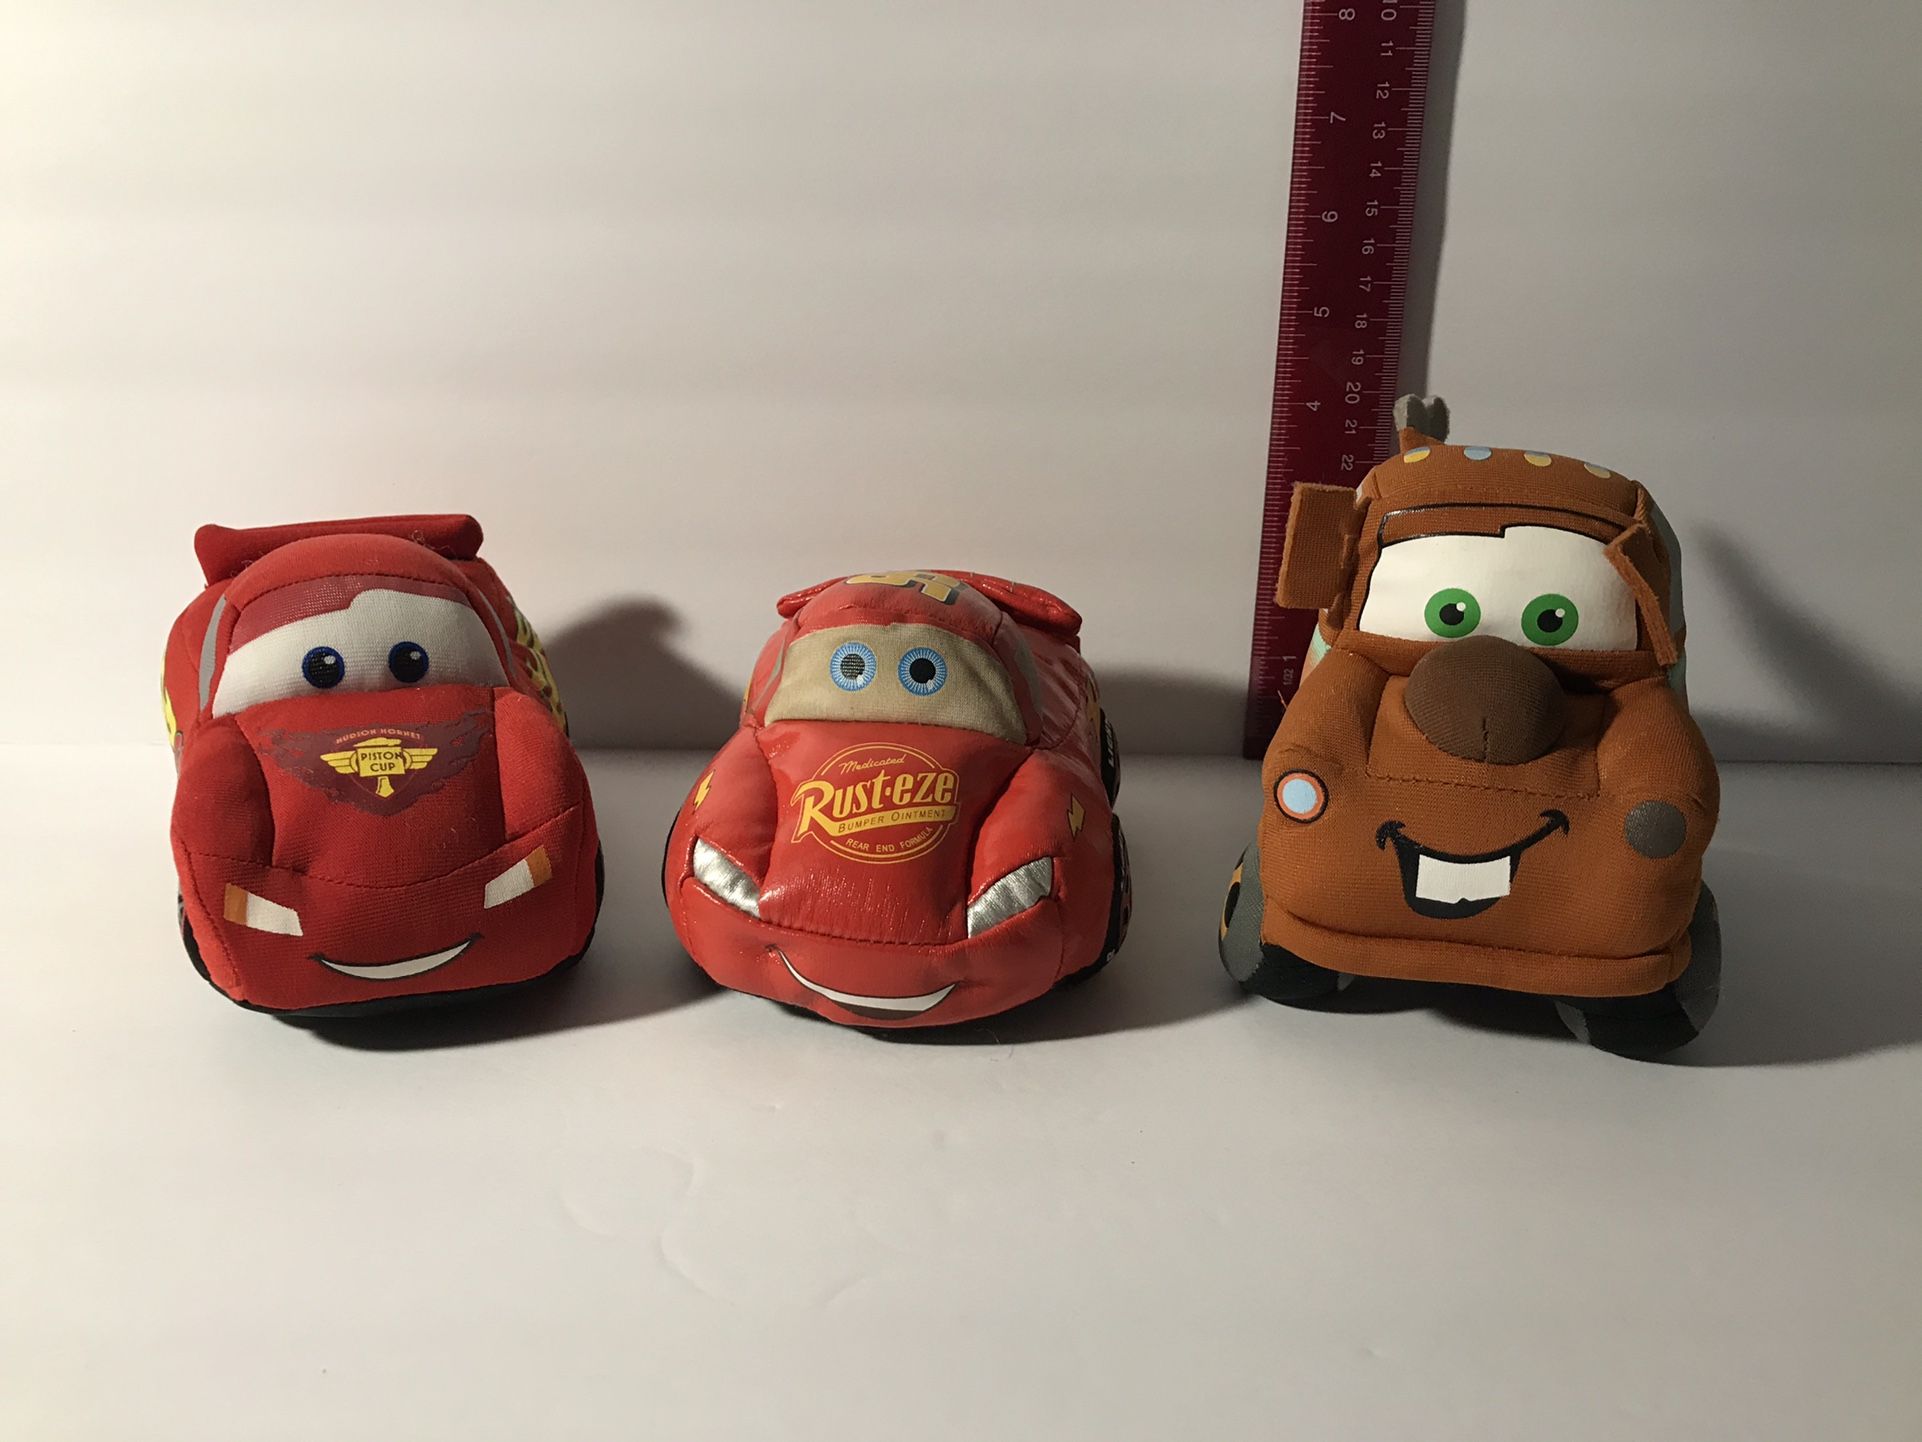 Disney Pixar Cars ( Plush Cars)